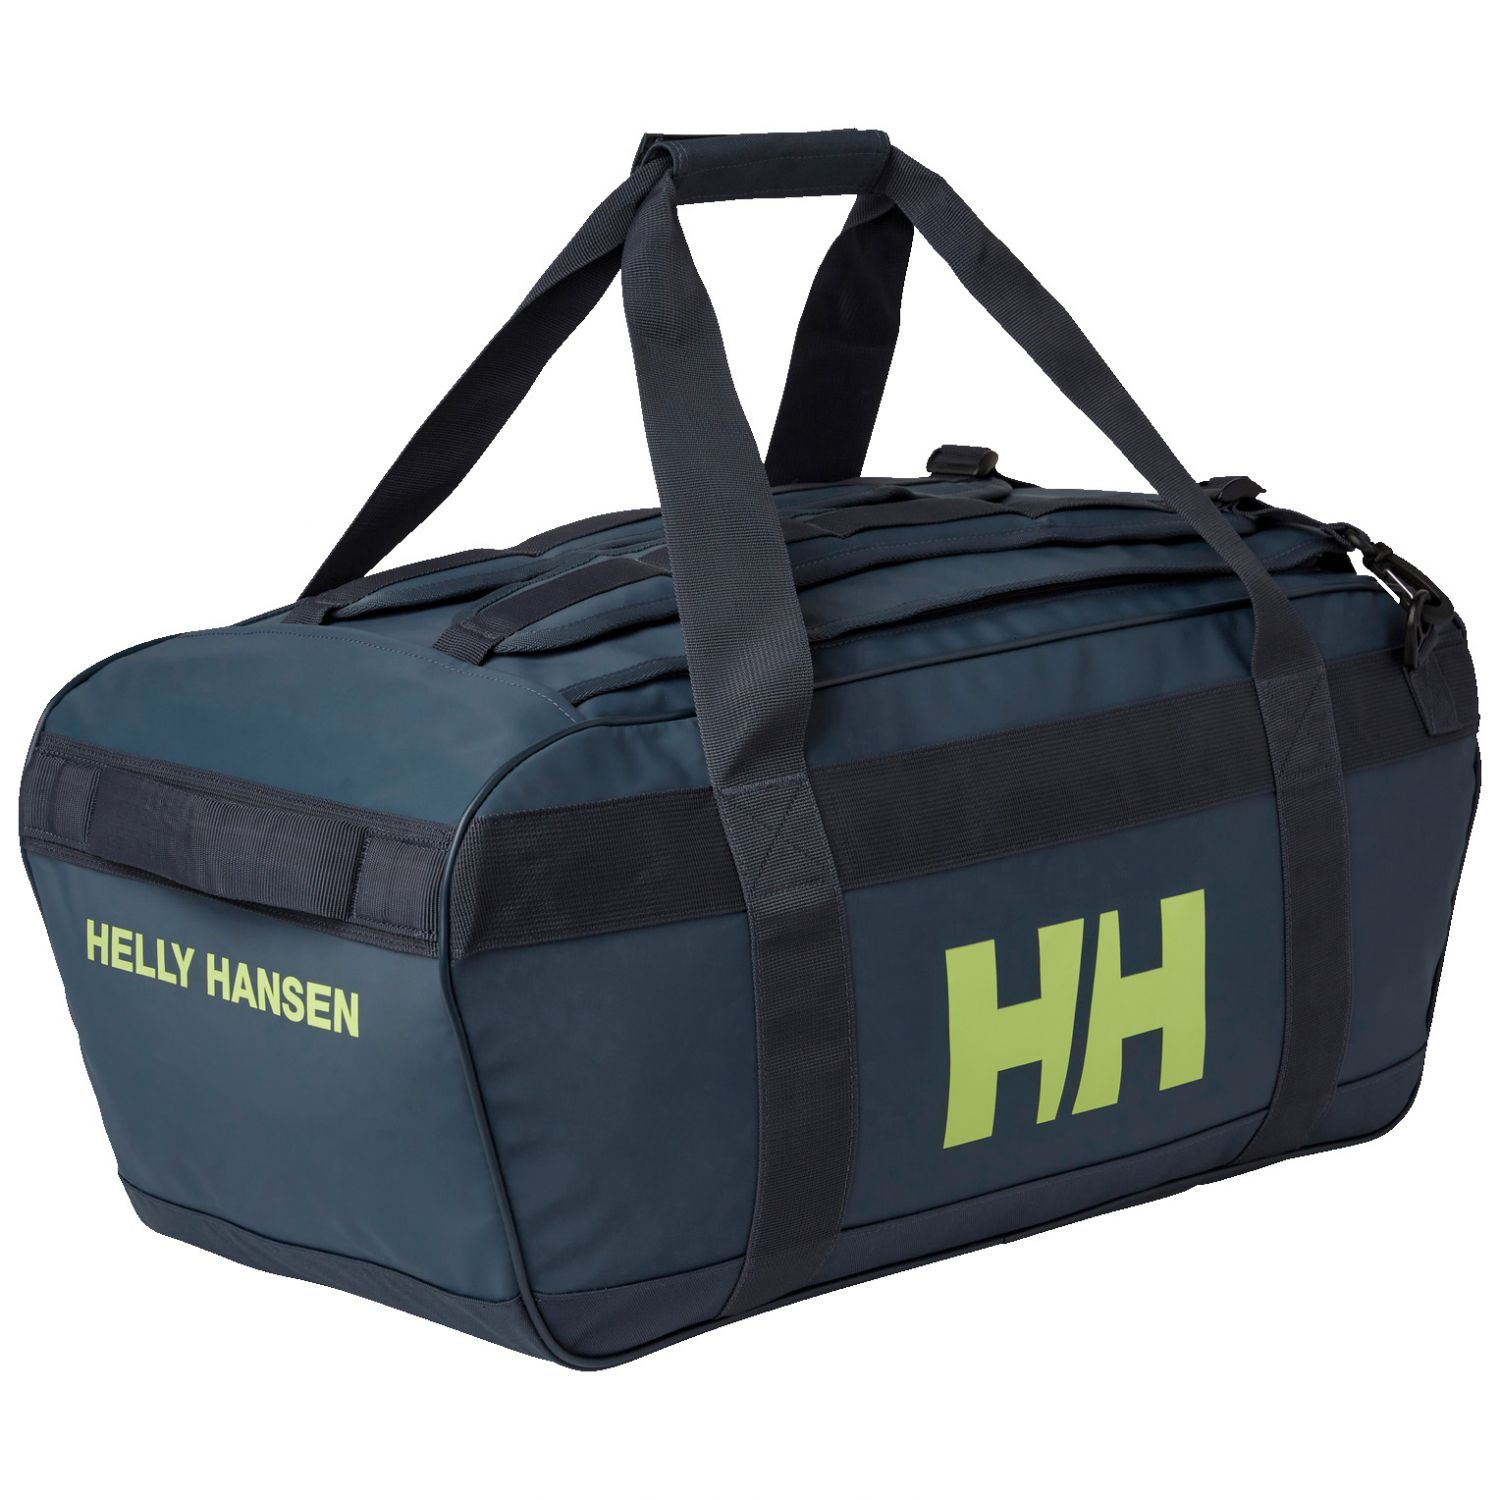 Brug Helly Hansen Scout Duffel Bag, 30L, alpine frost til en forbedret oplevelse